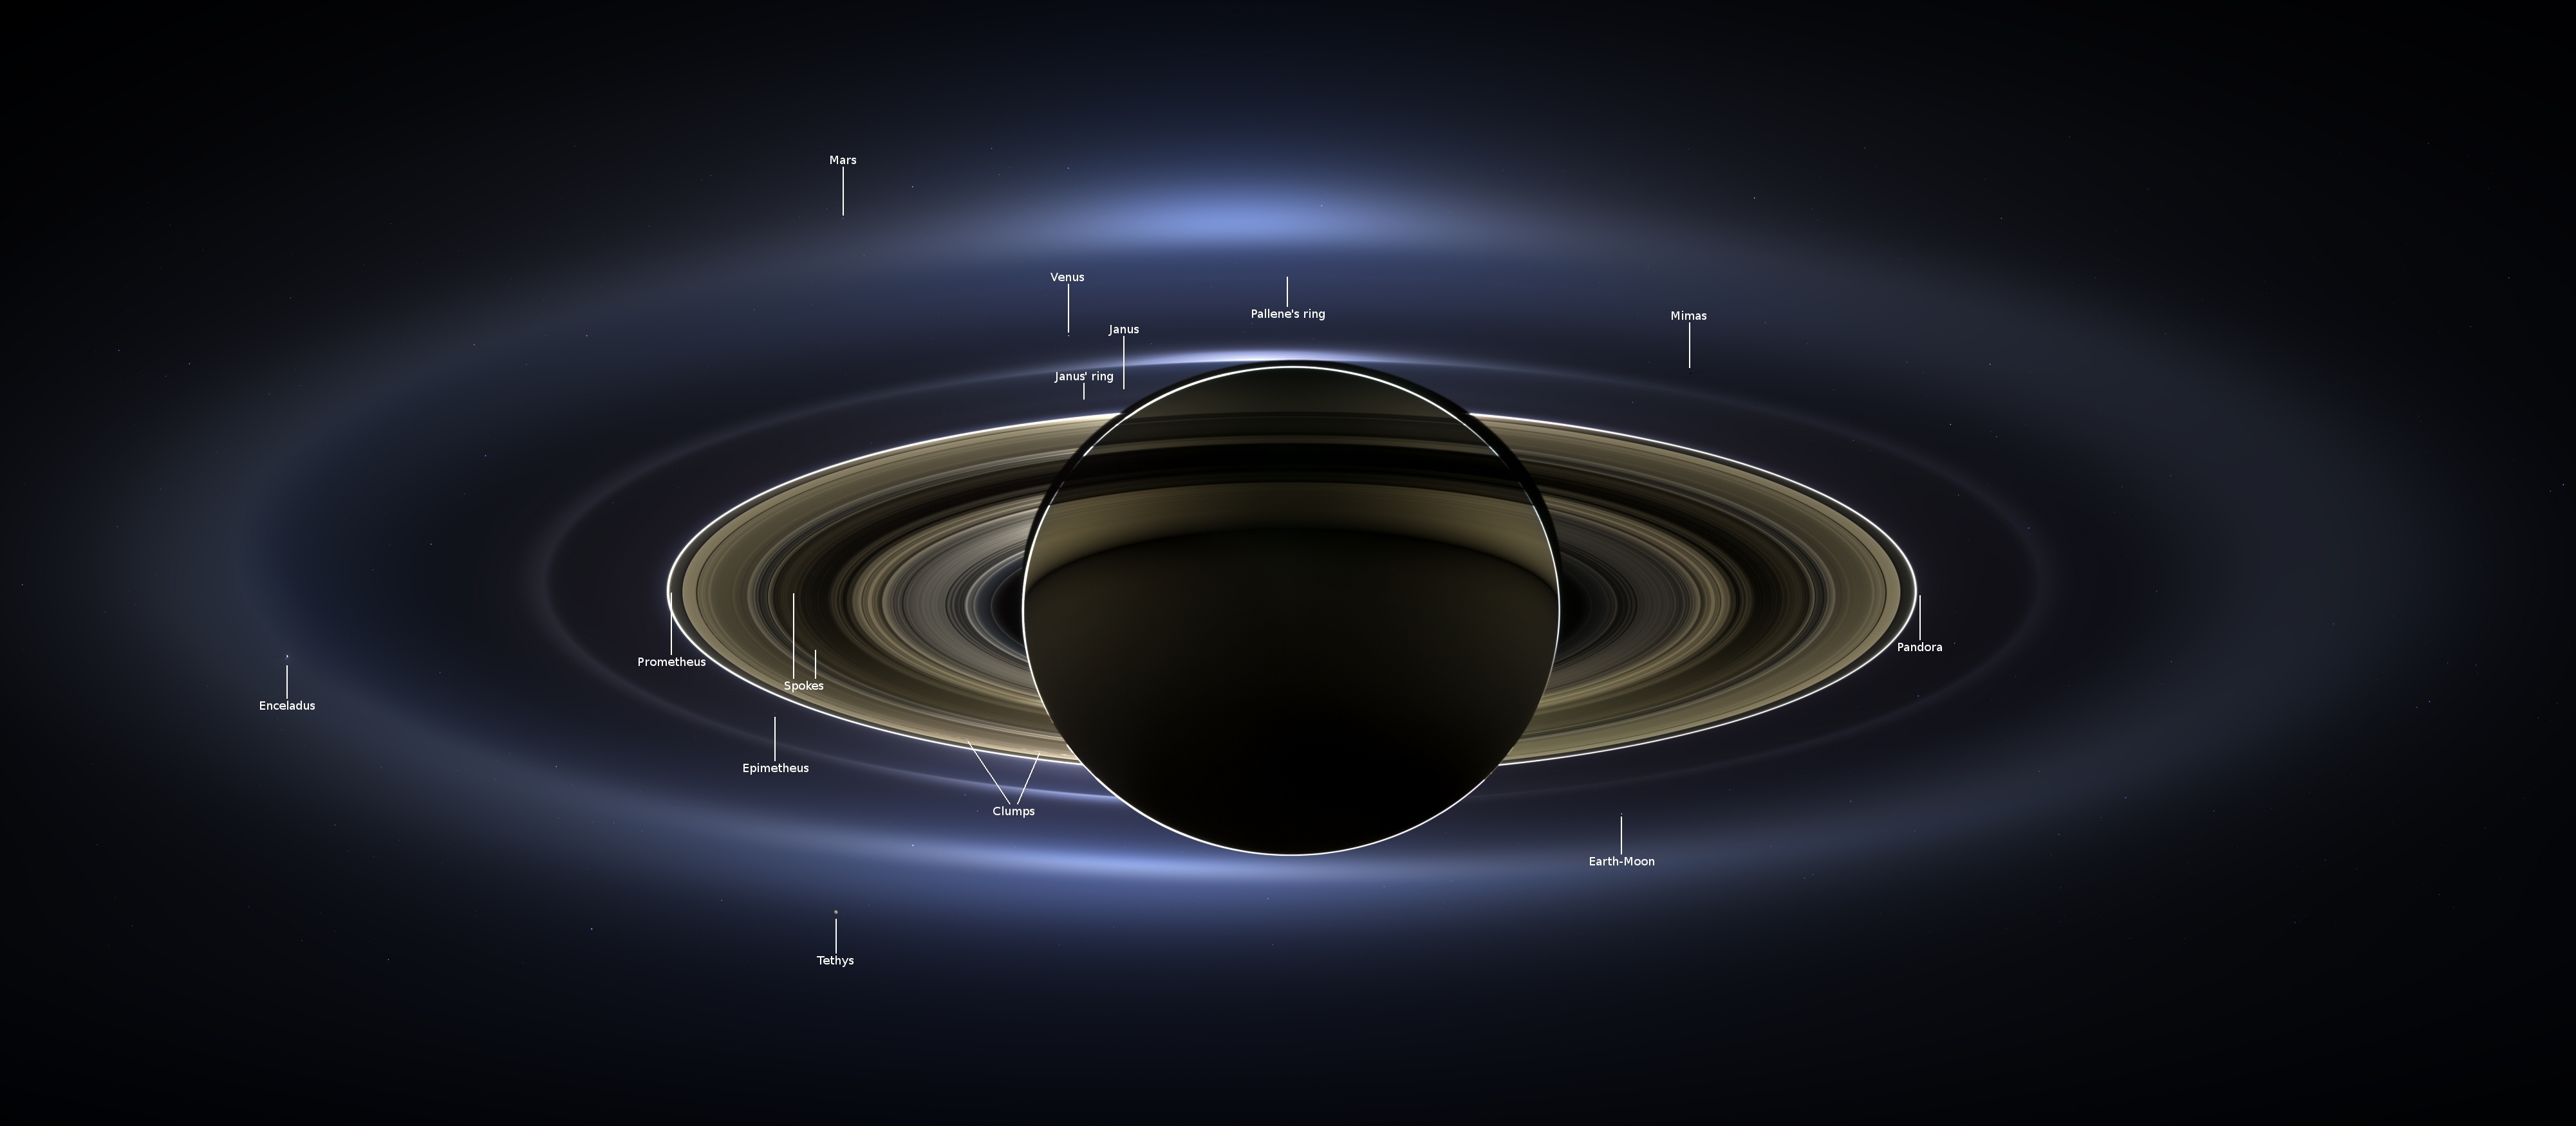 Saturn Backlit